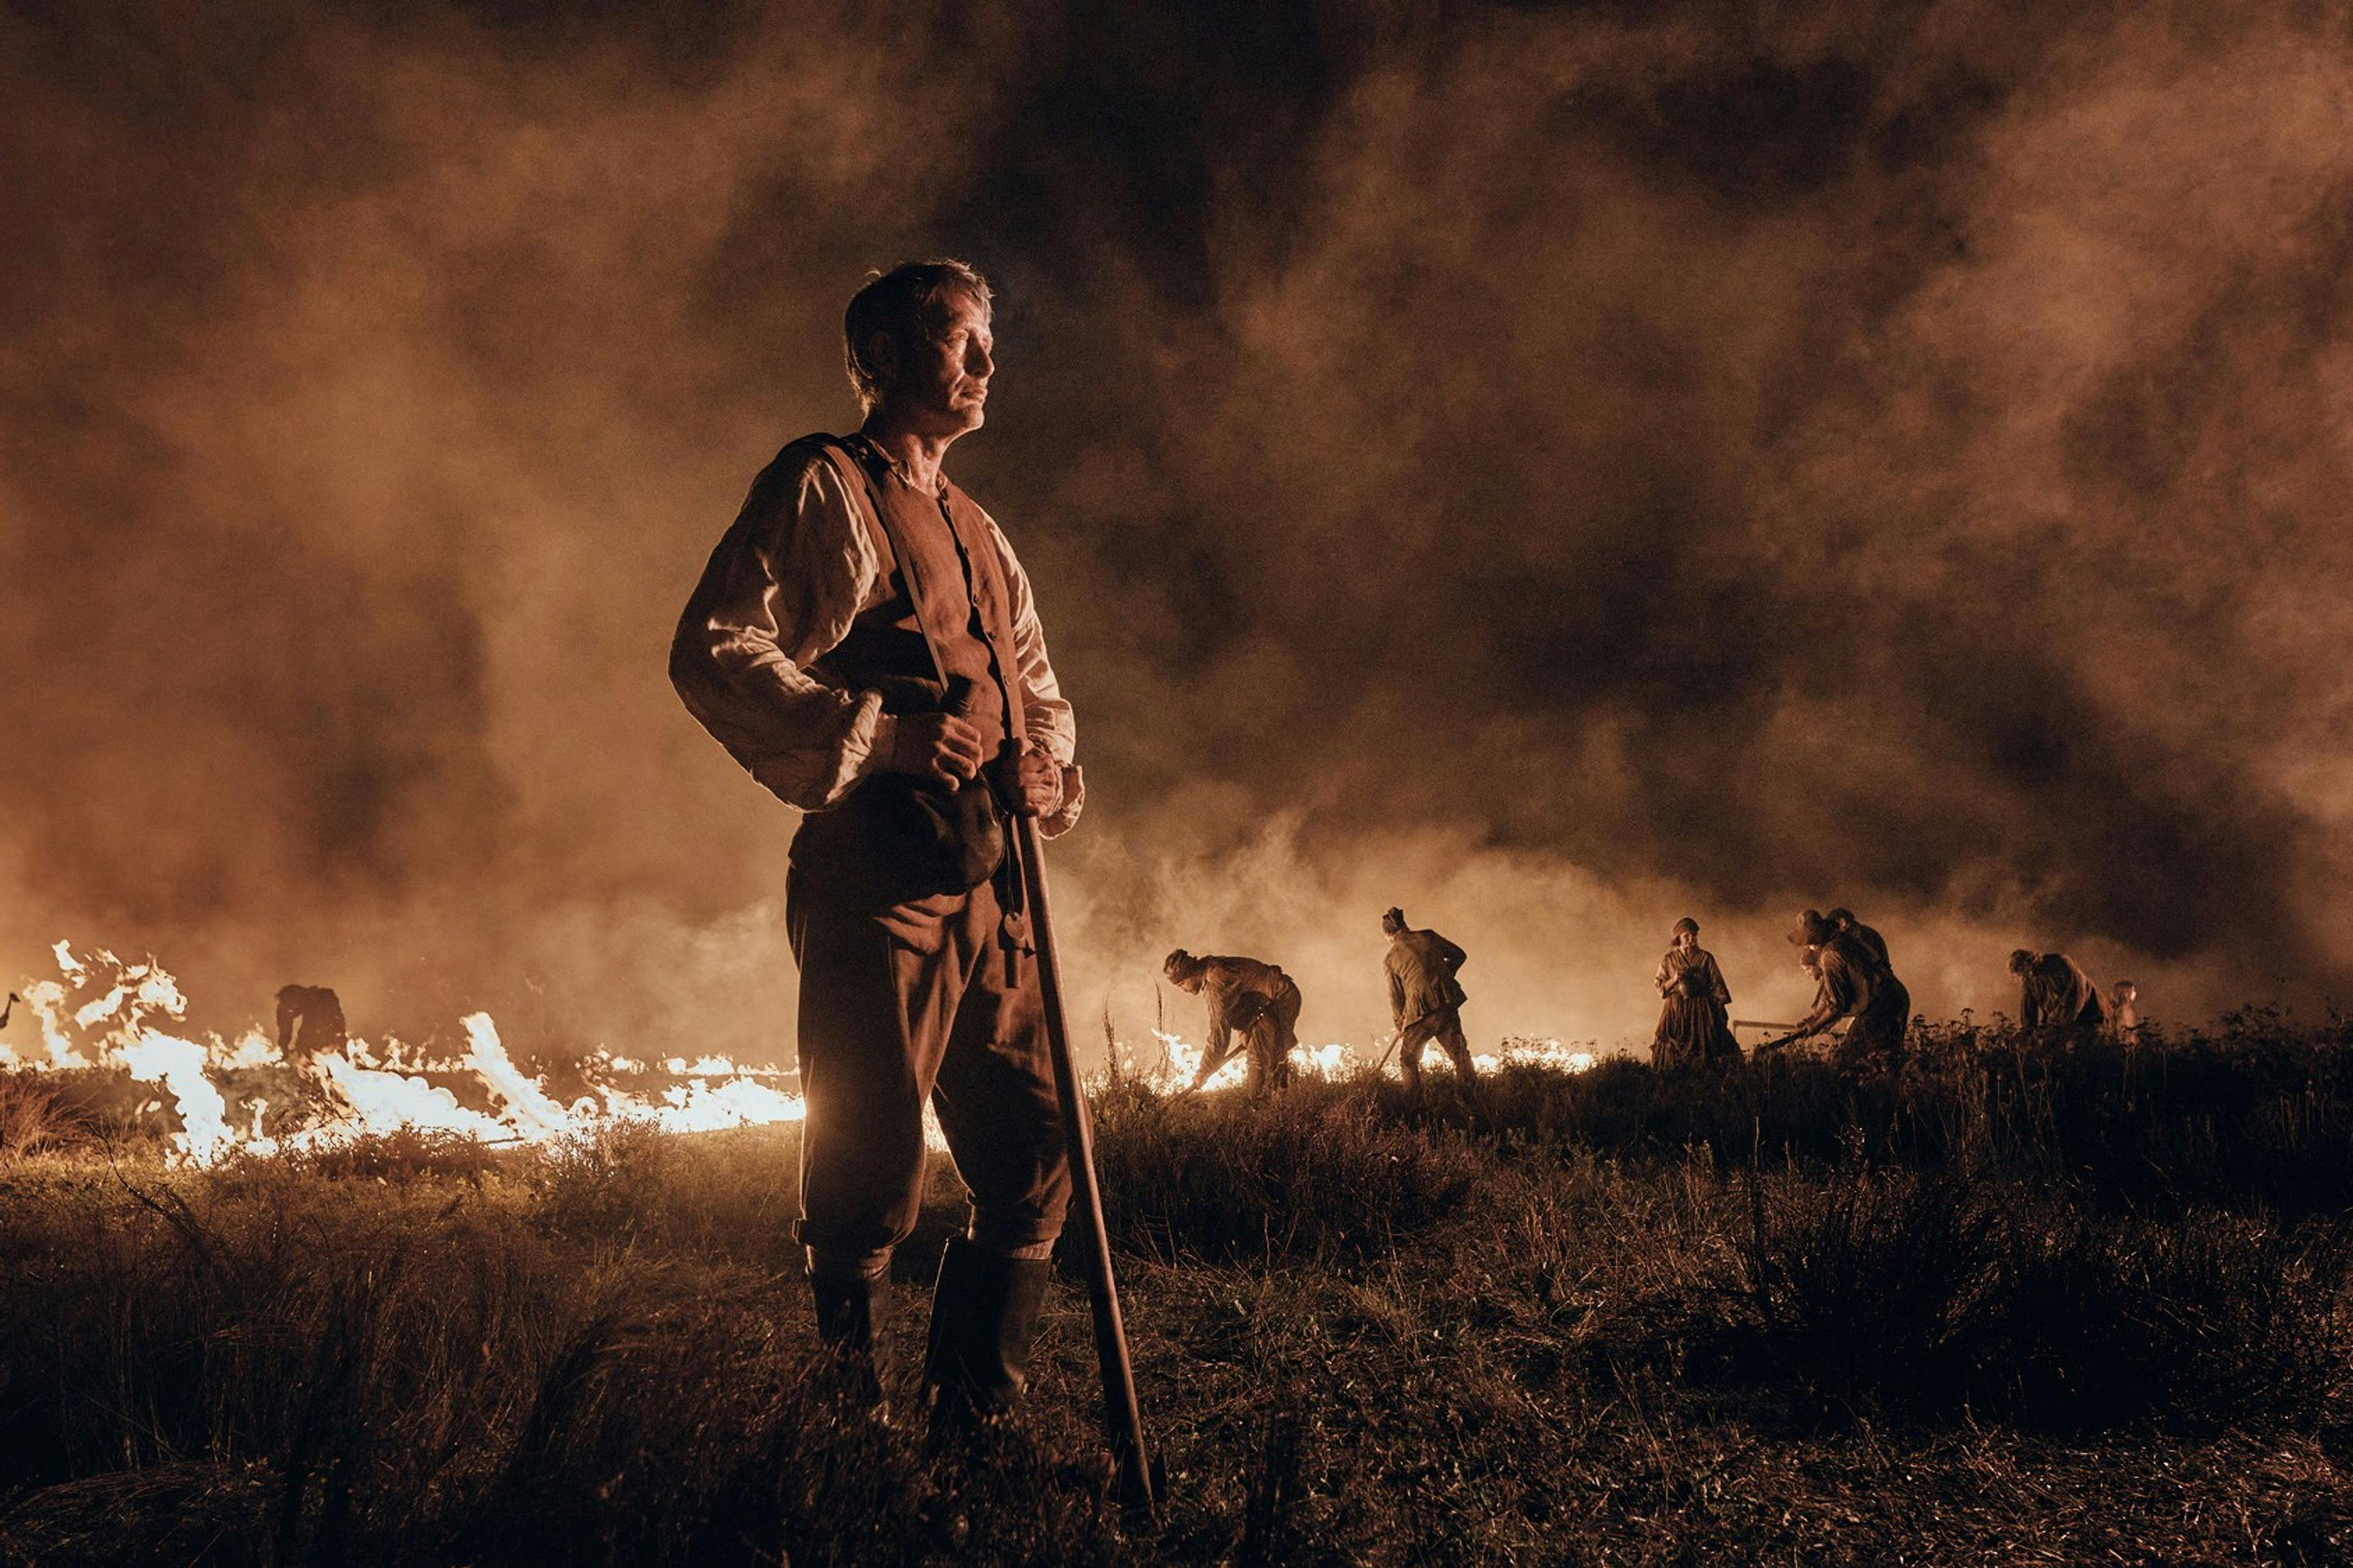 'La tierra prometida', protagonizada por Mads Mikkelsen, es la candidata danesa al Oscar a Mejor Película internacional